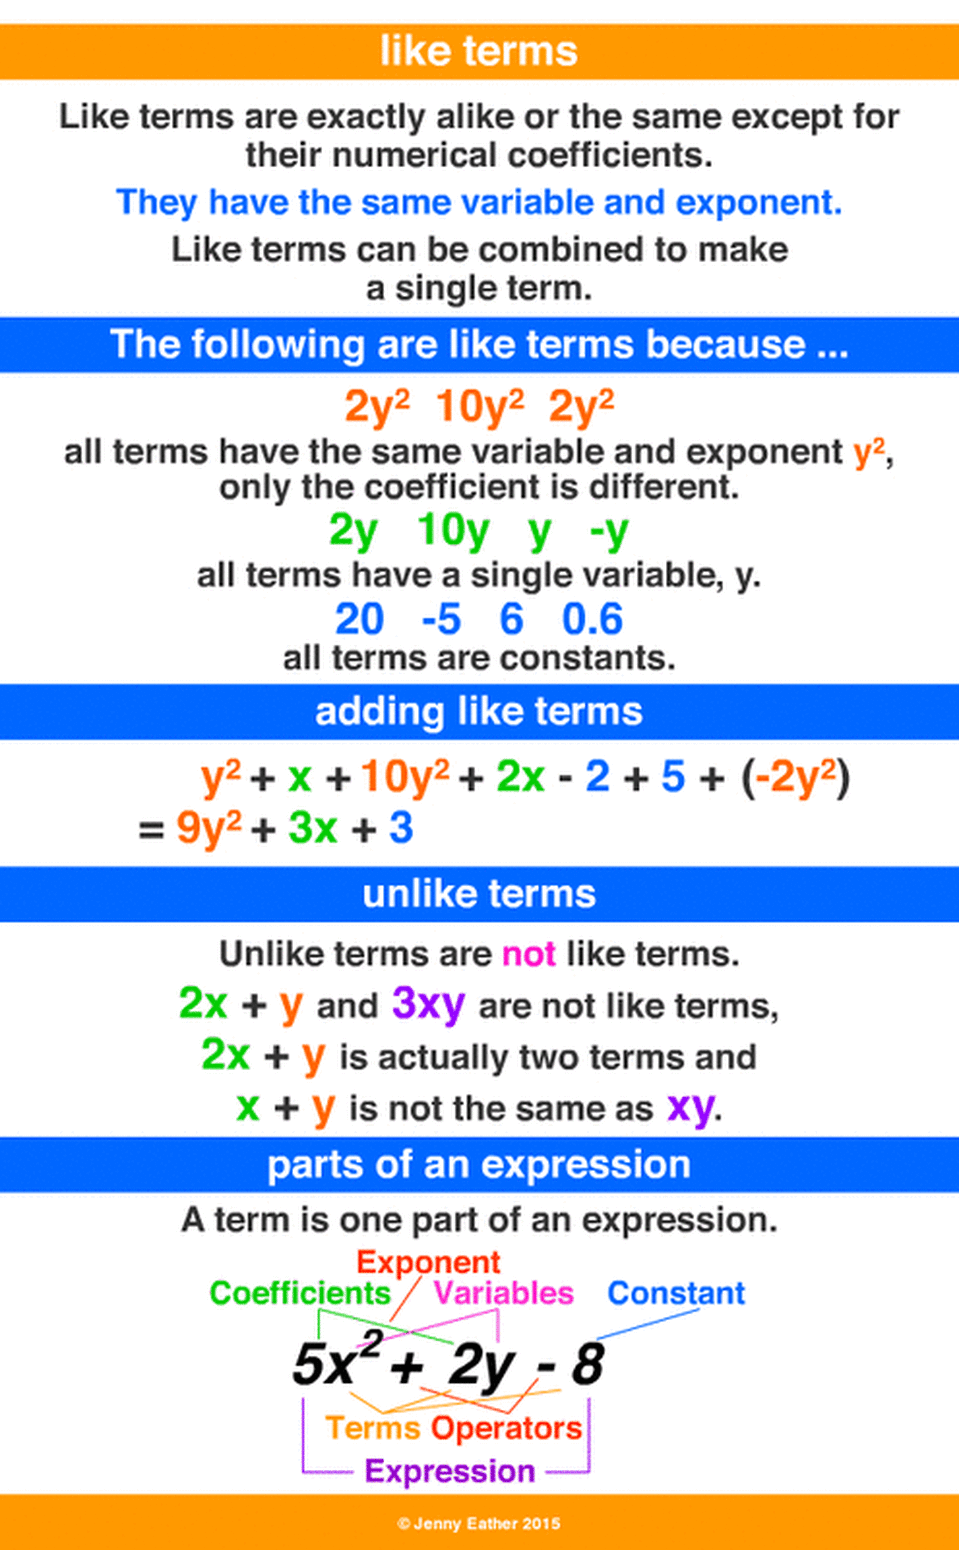 simplifying algebraic expressions